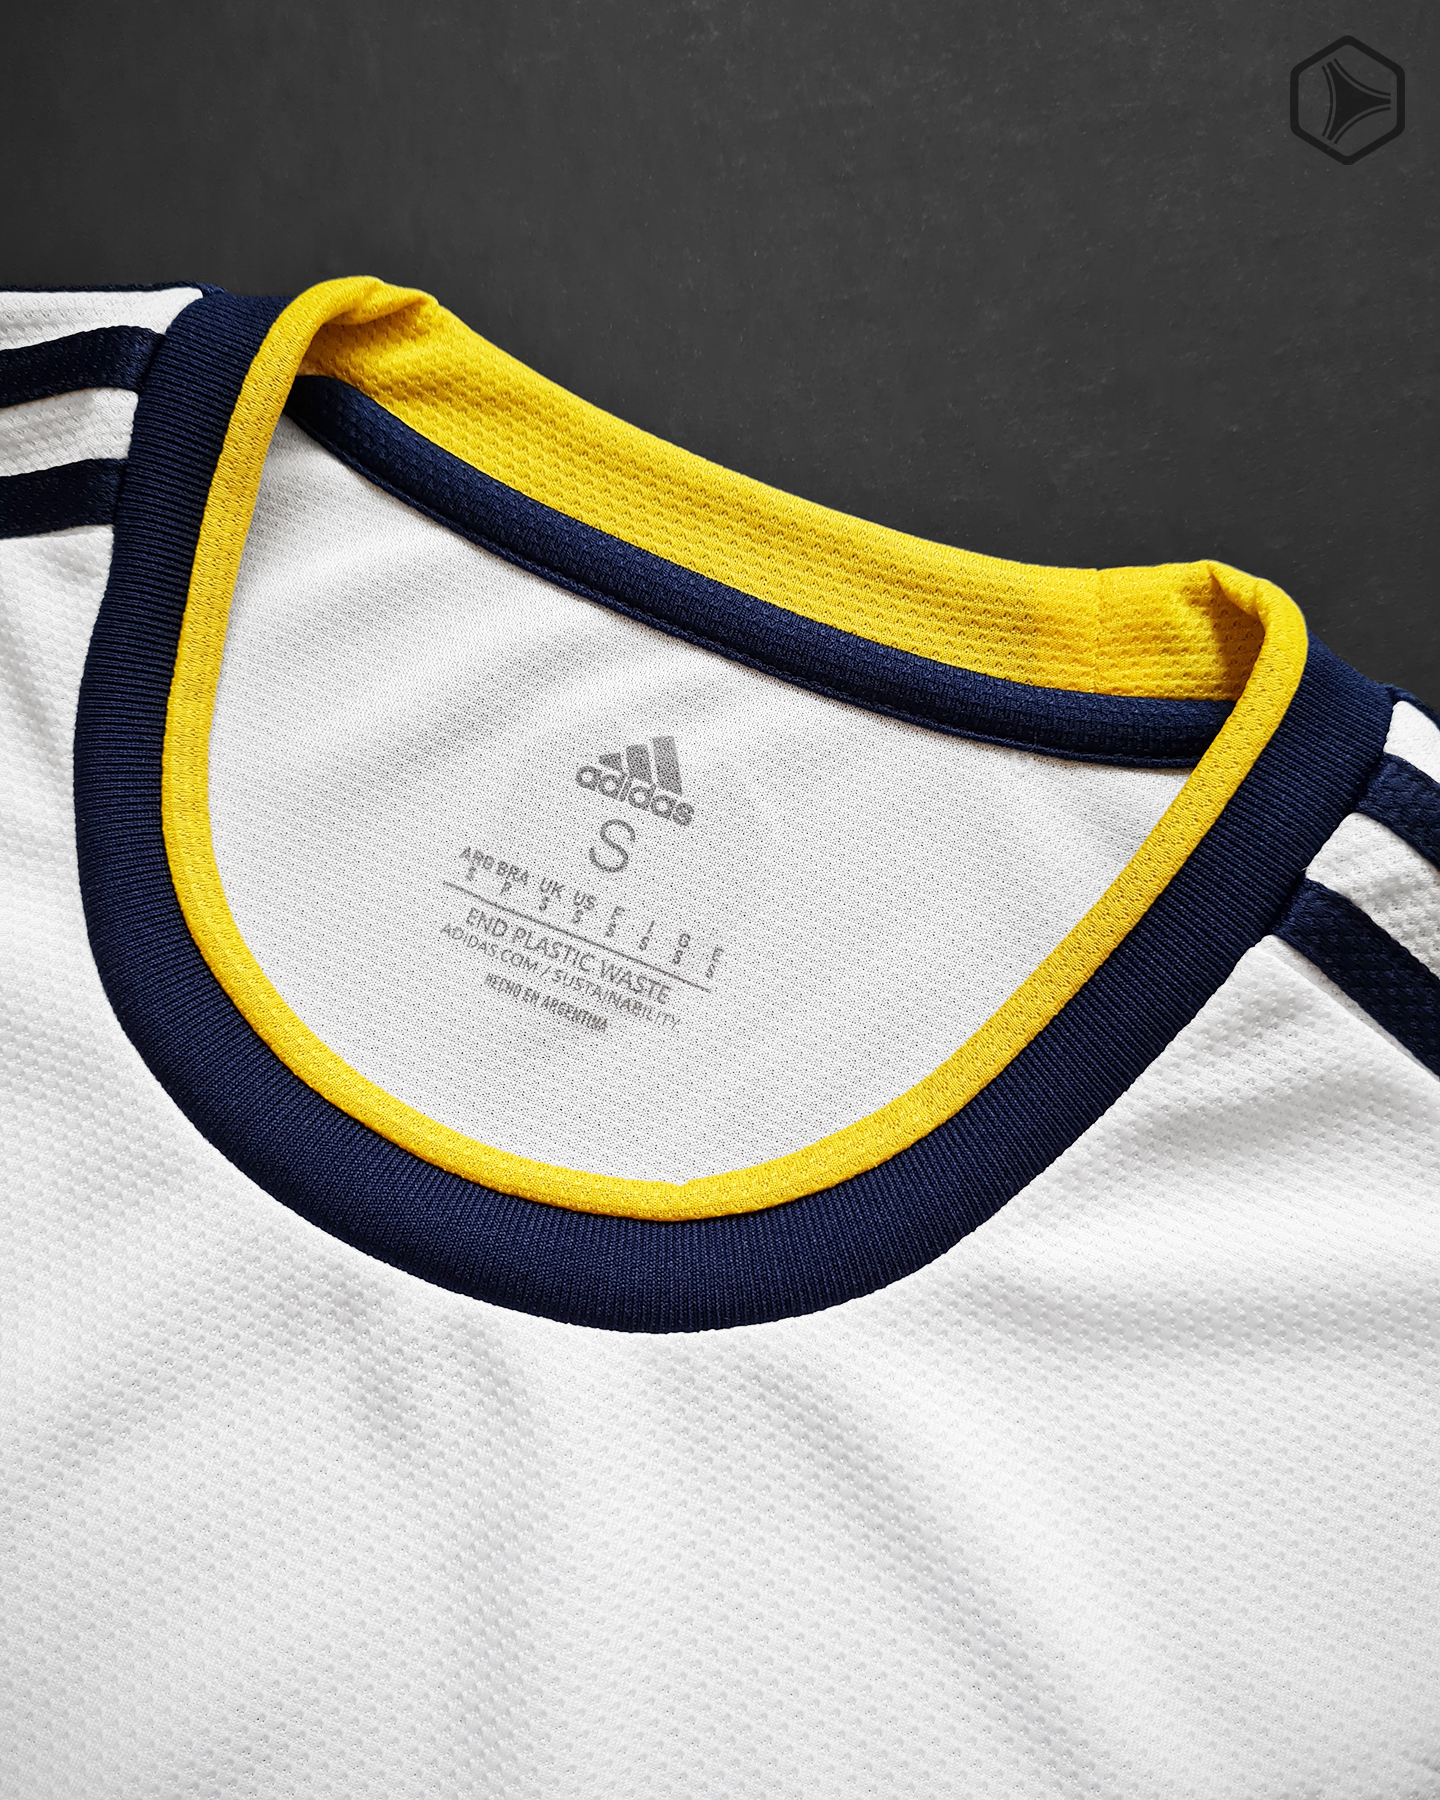 Camiseta alternativa adidas de Boca Juniors 2022 2023